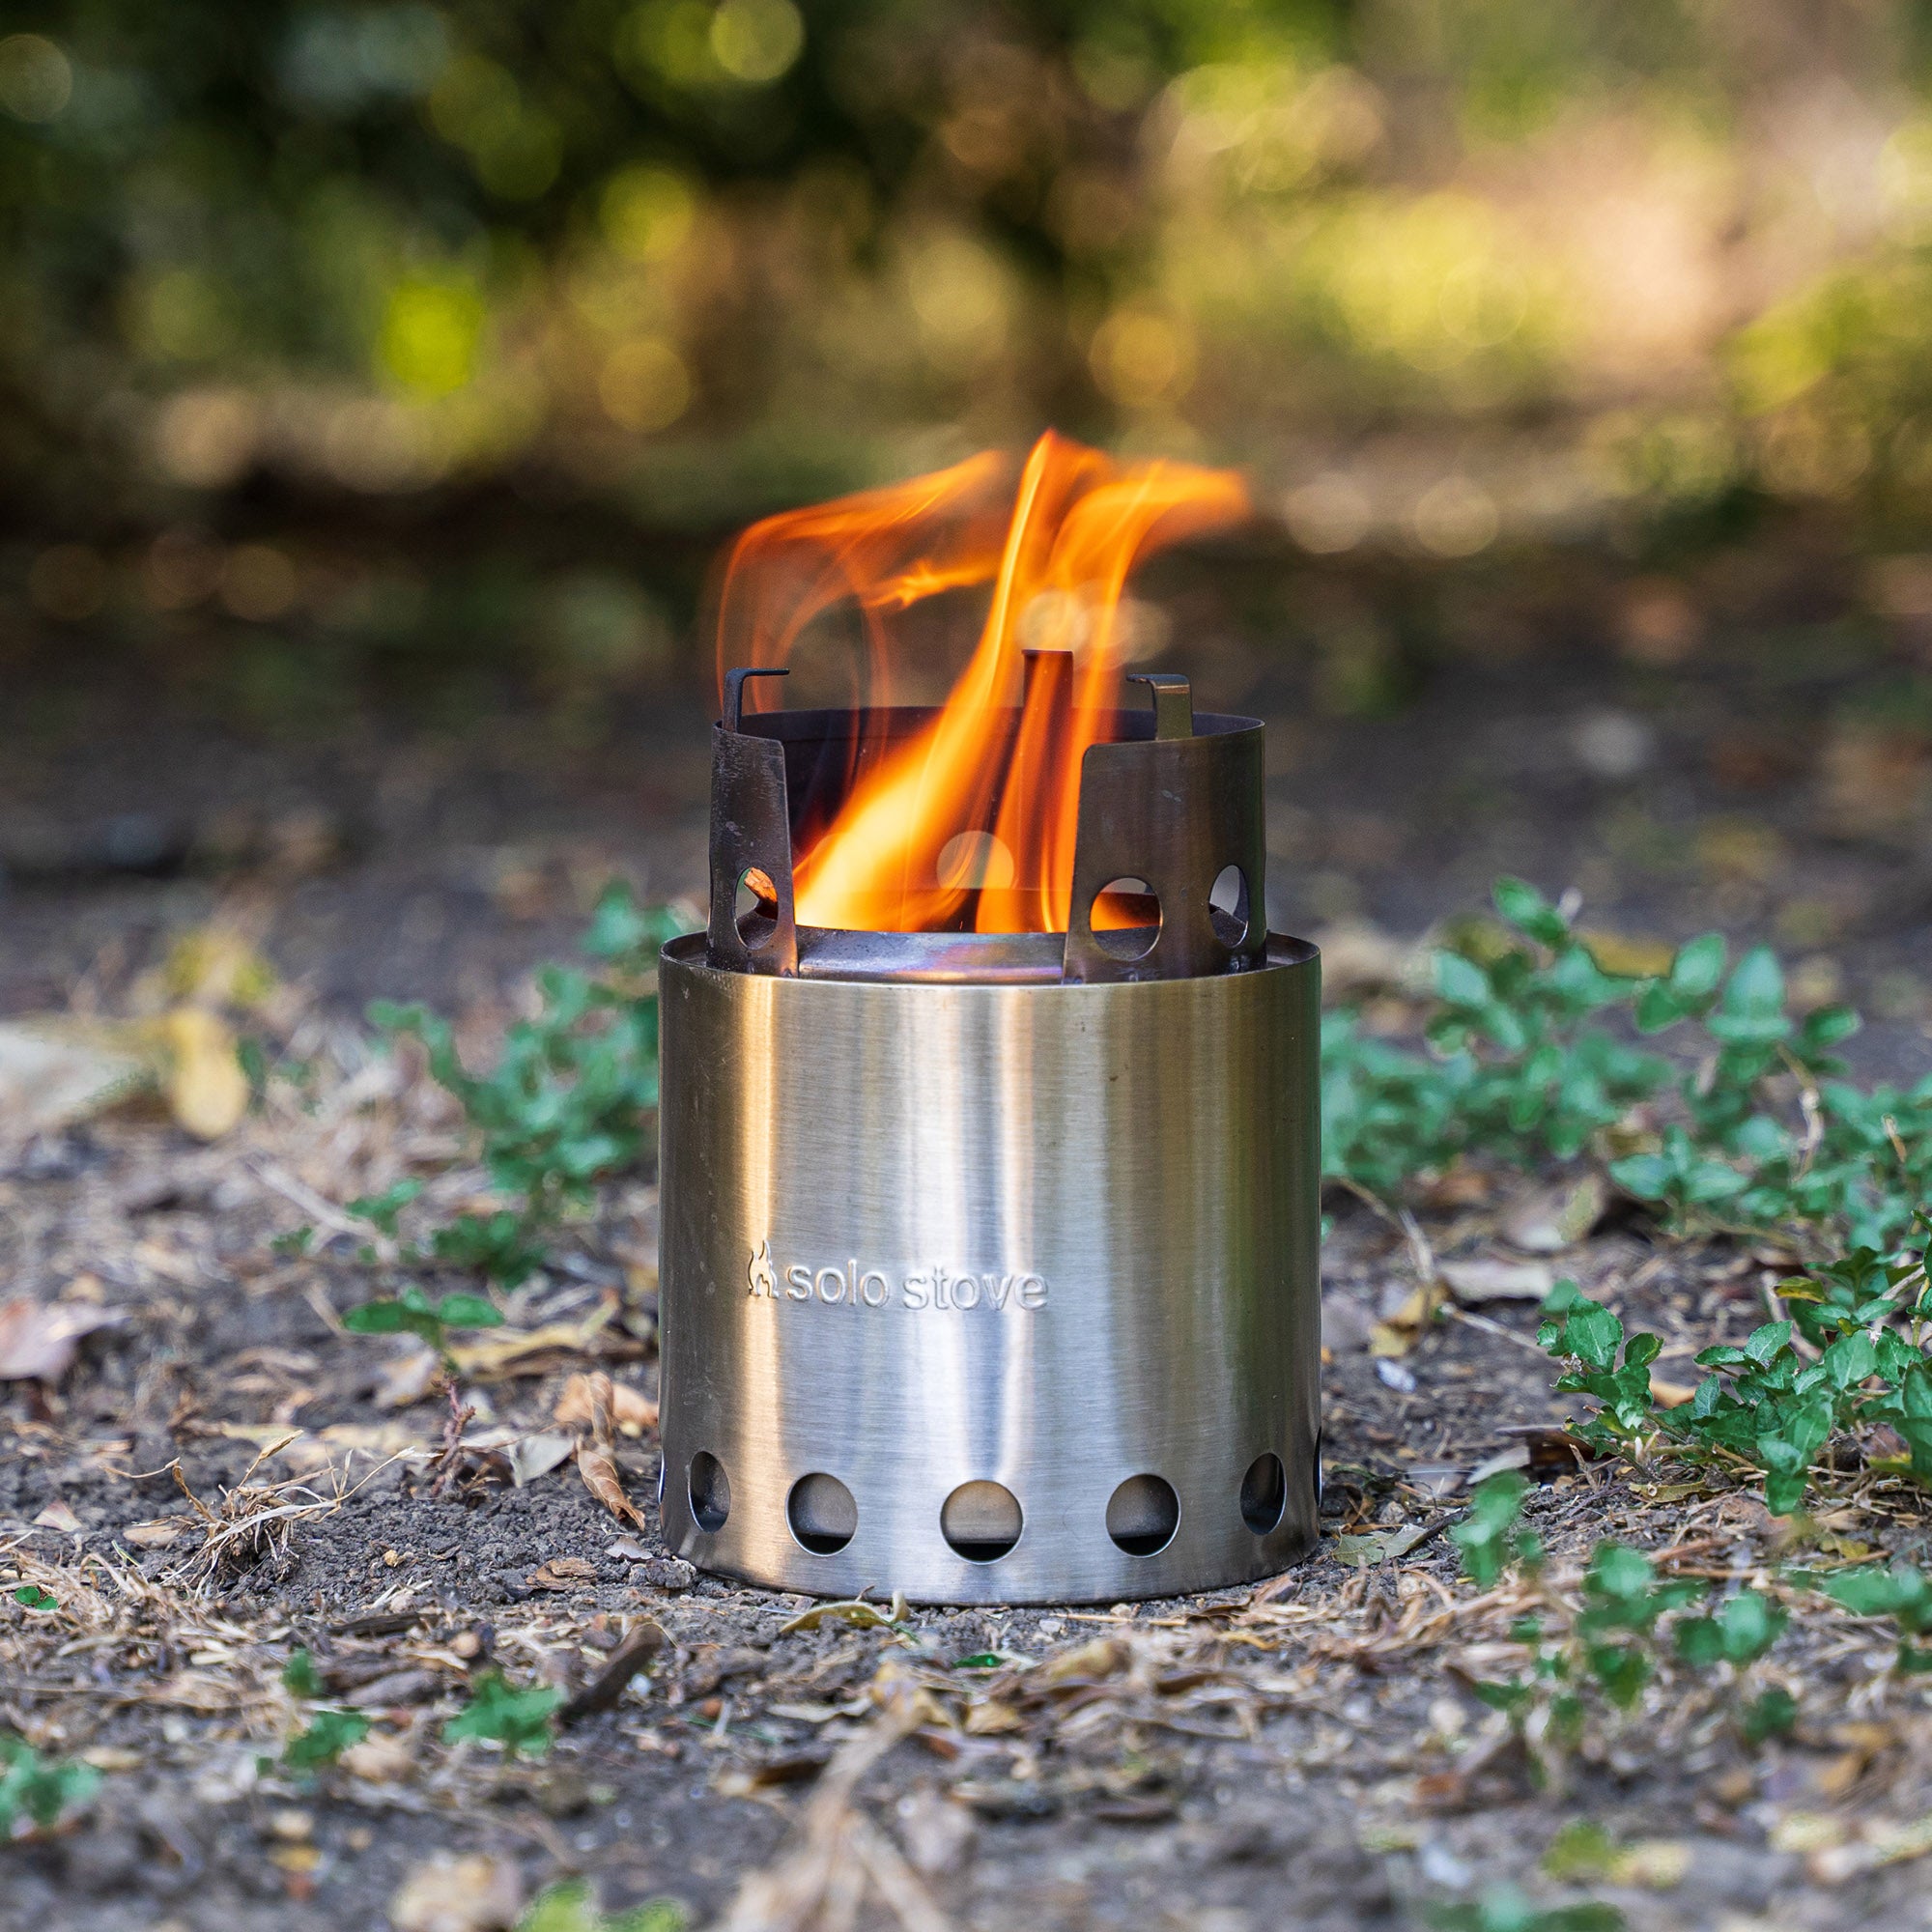 ソロストーブ ライト solo stove - 調理器具